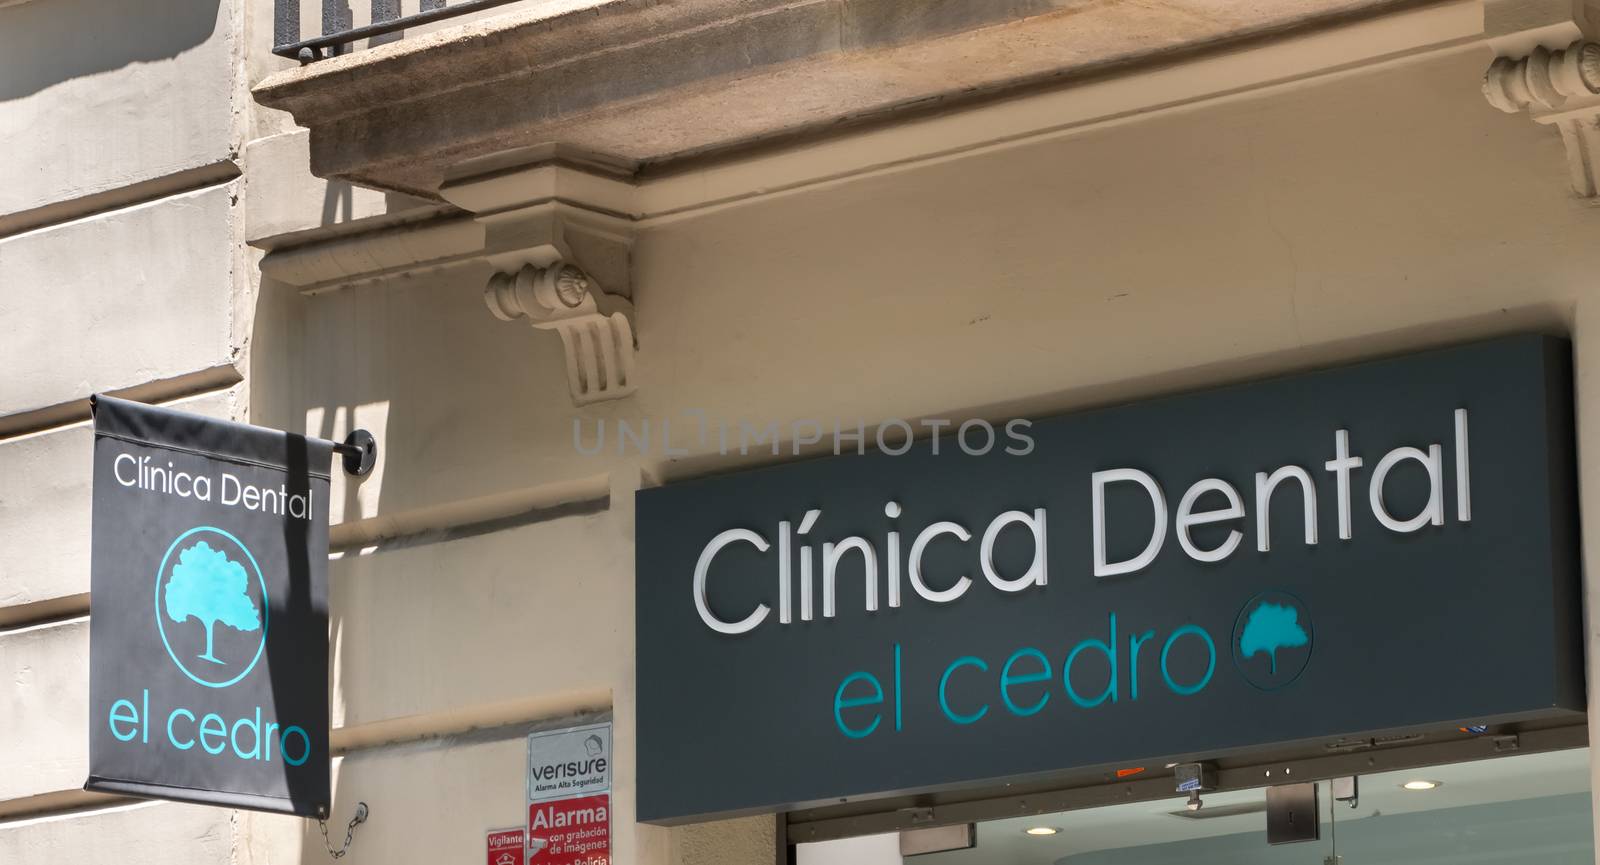 facade of the El Cedro dental clinic in Barcelona, Span by AtlanticEUROSTOXX